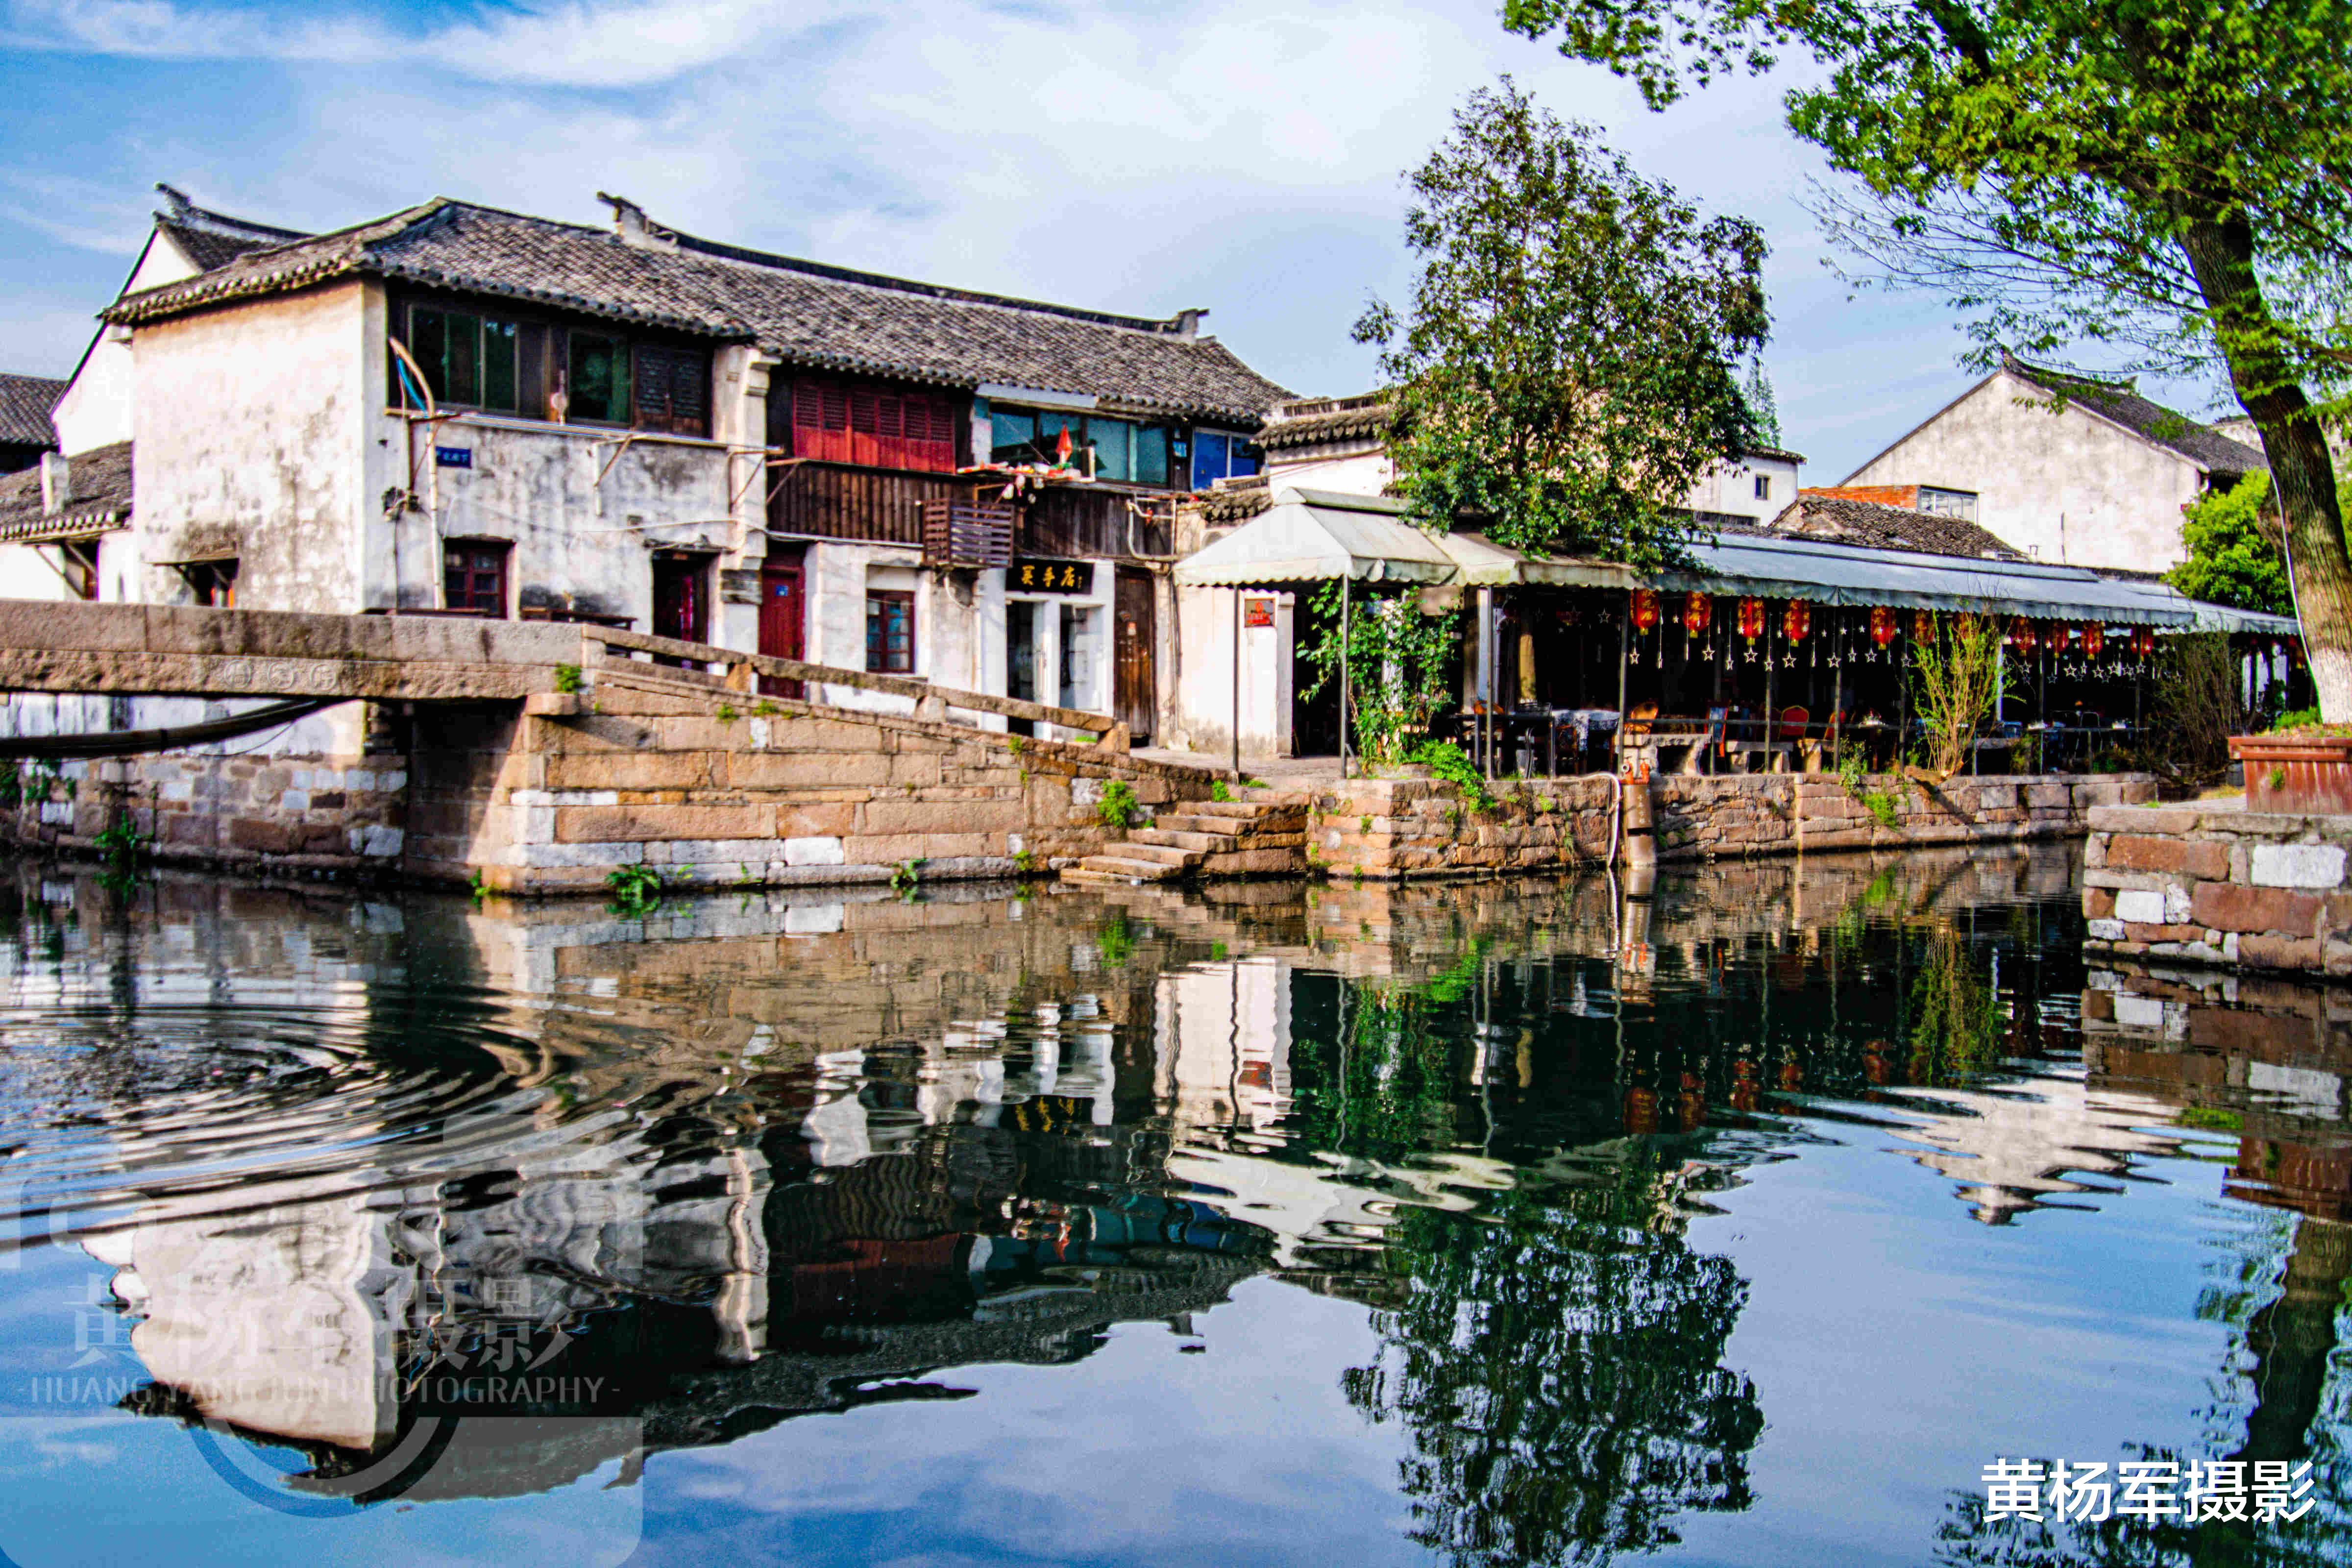 彩虹|江苏保存最完好的小镇，至今有一千多年的历史，景象原生态美如画